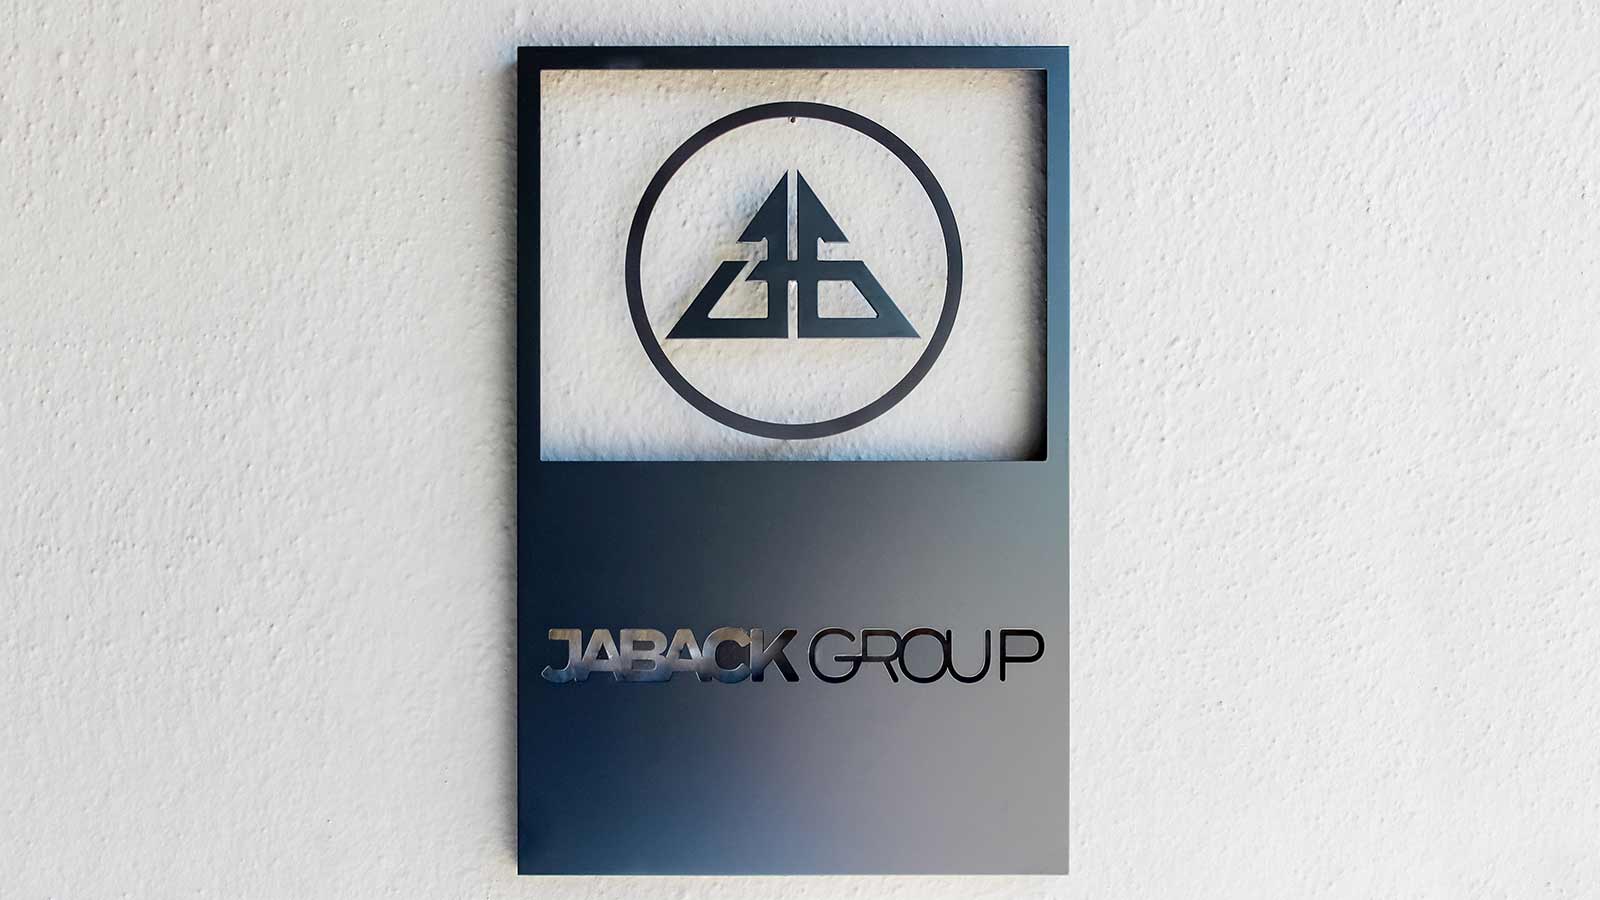 jaback group black painted aluminum sign